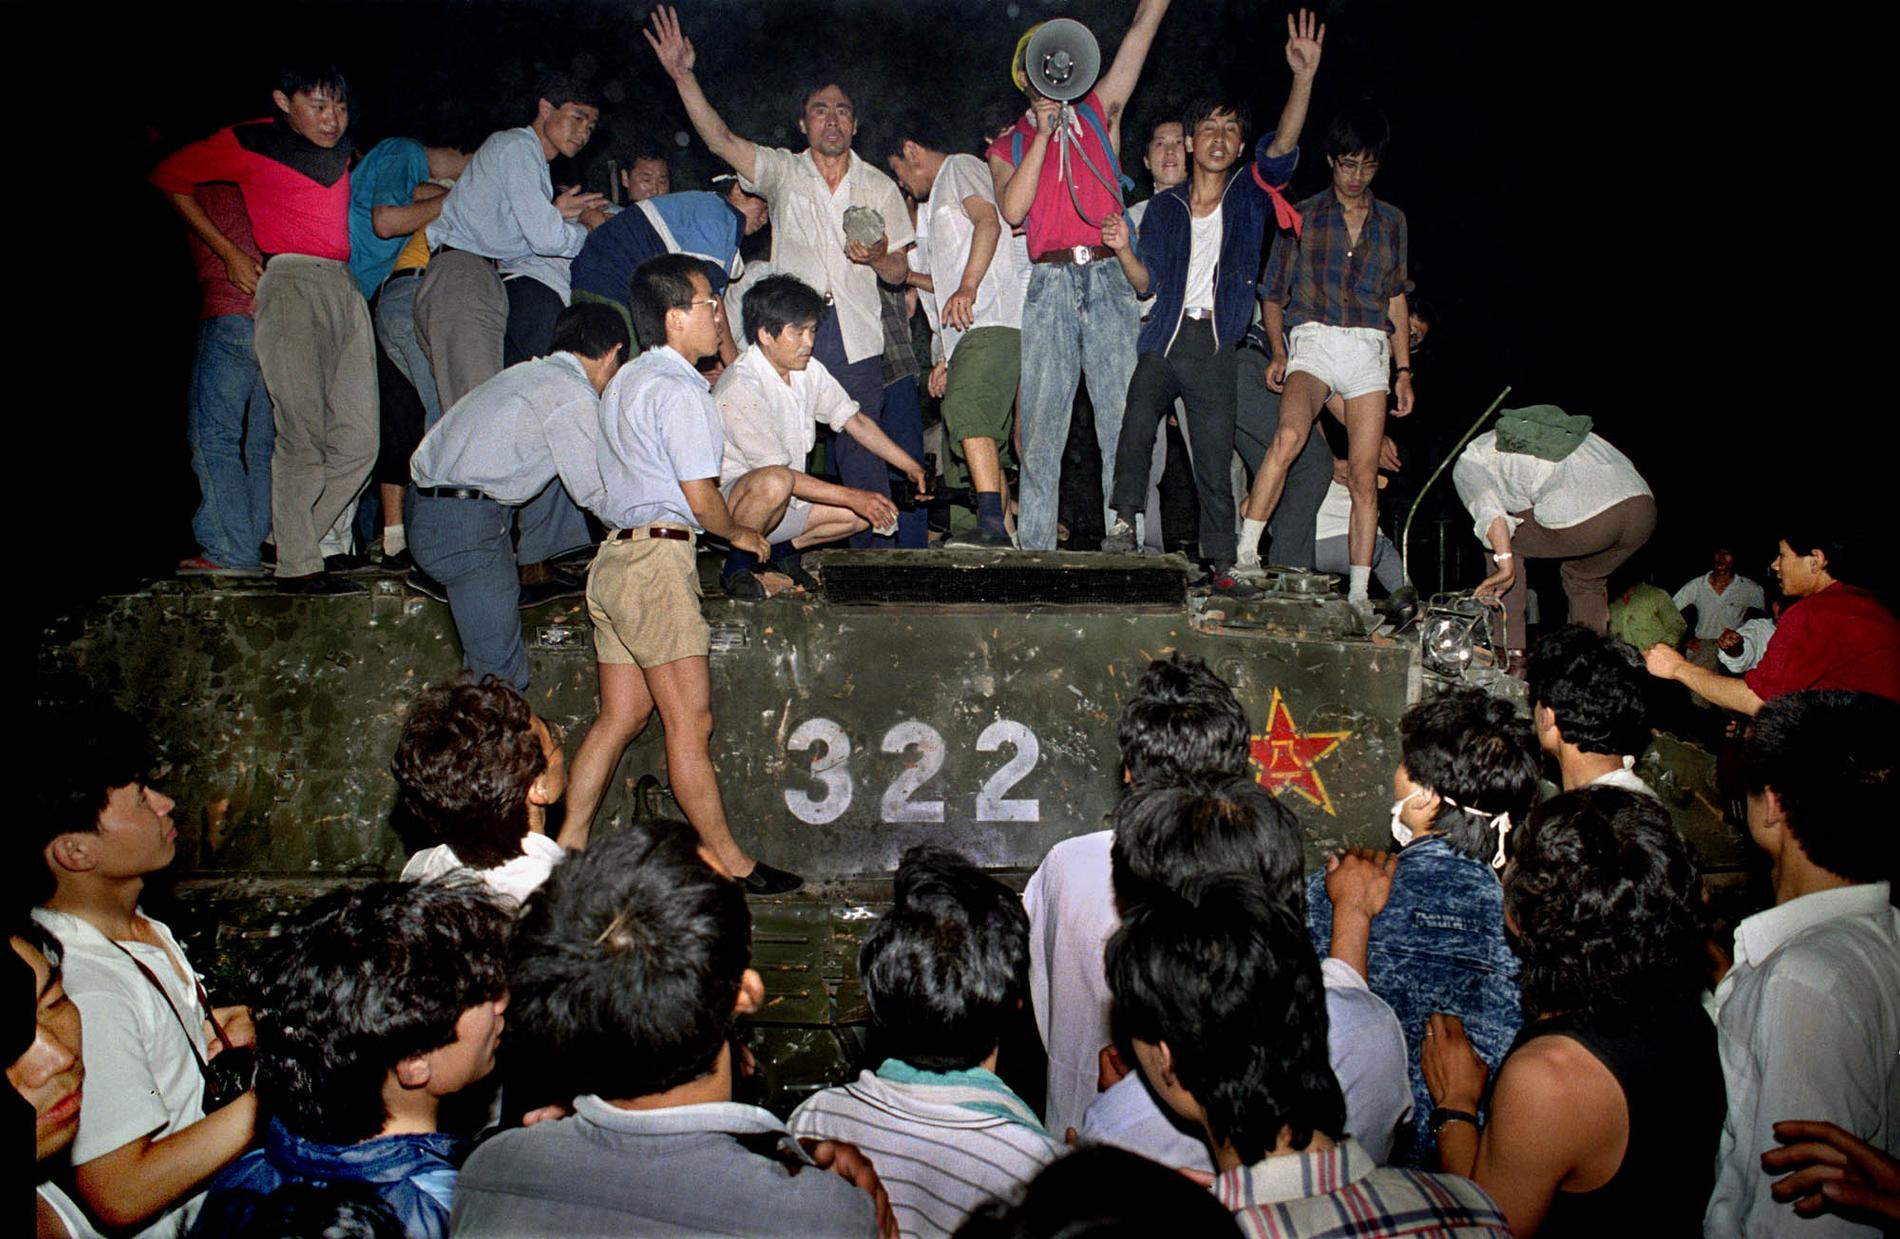 Civila som klättrat upp på ett pansarfordon nära Himmelska fridens torg i Peking, natten mot den 4 juni 1989. Arkivbild.